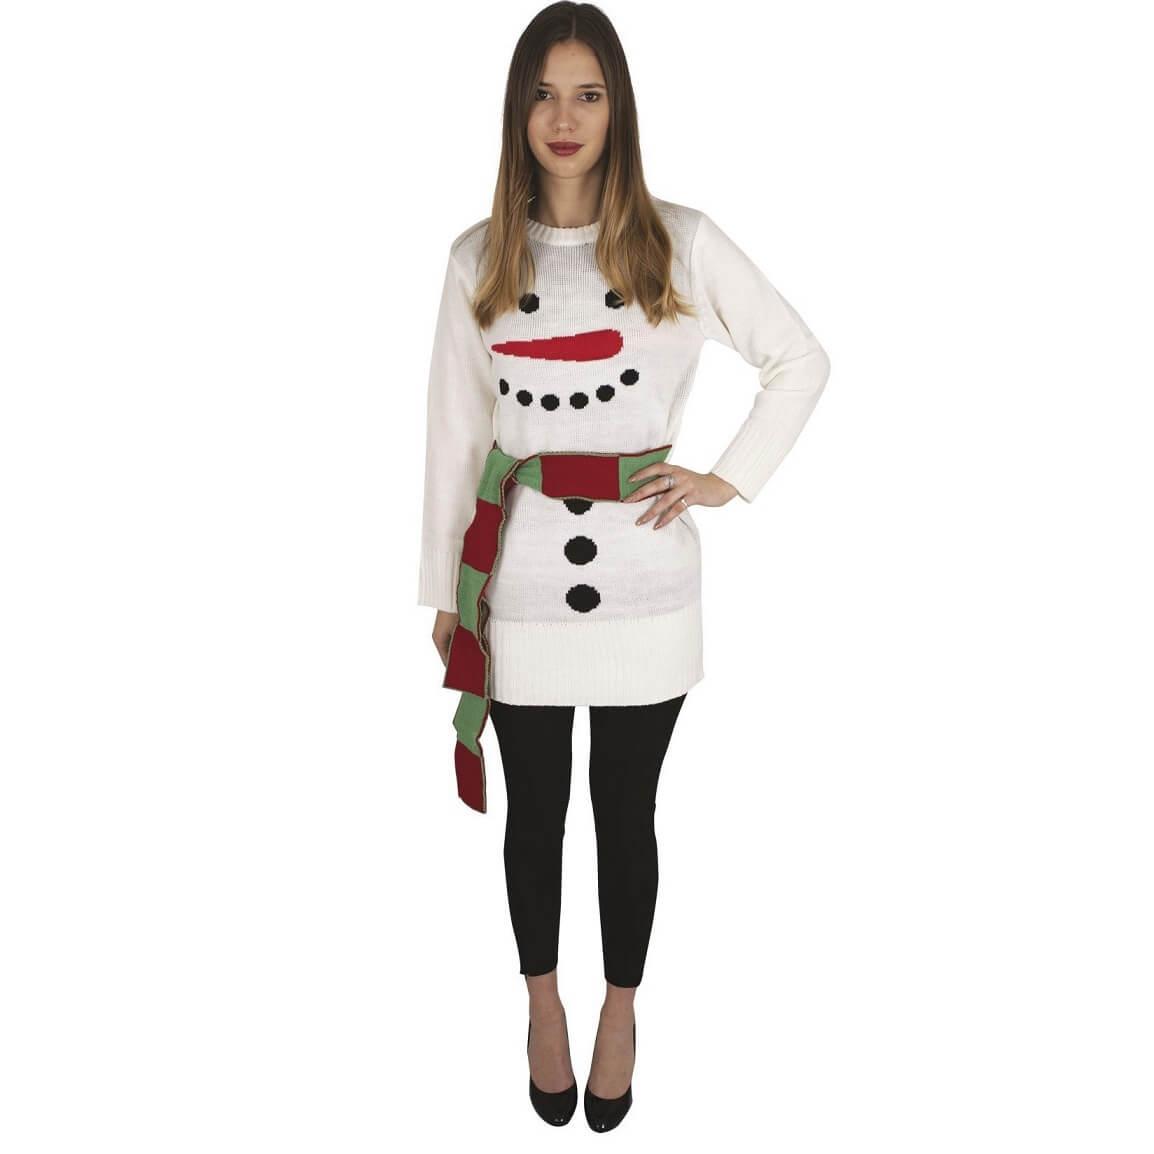 Costume femme de Noël avec robe bonhomme de neige REF/48152